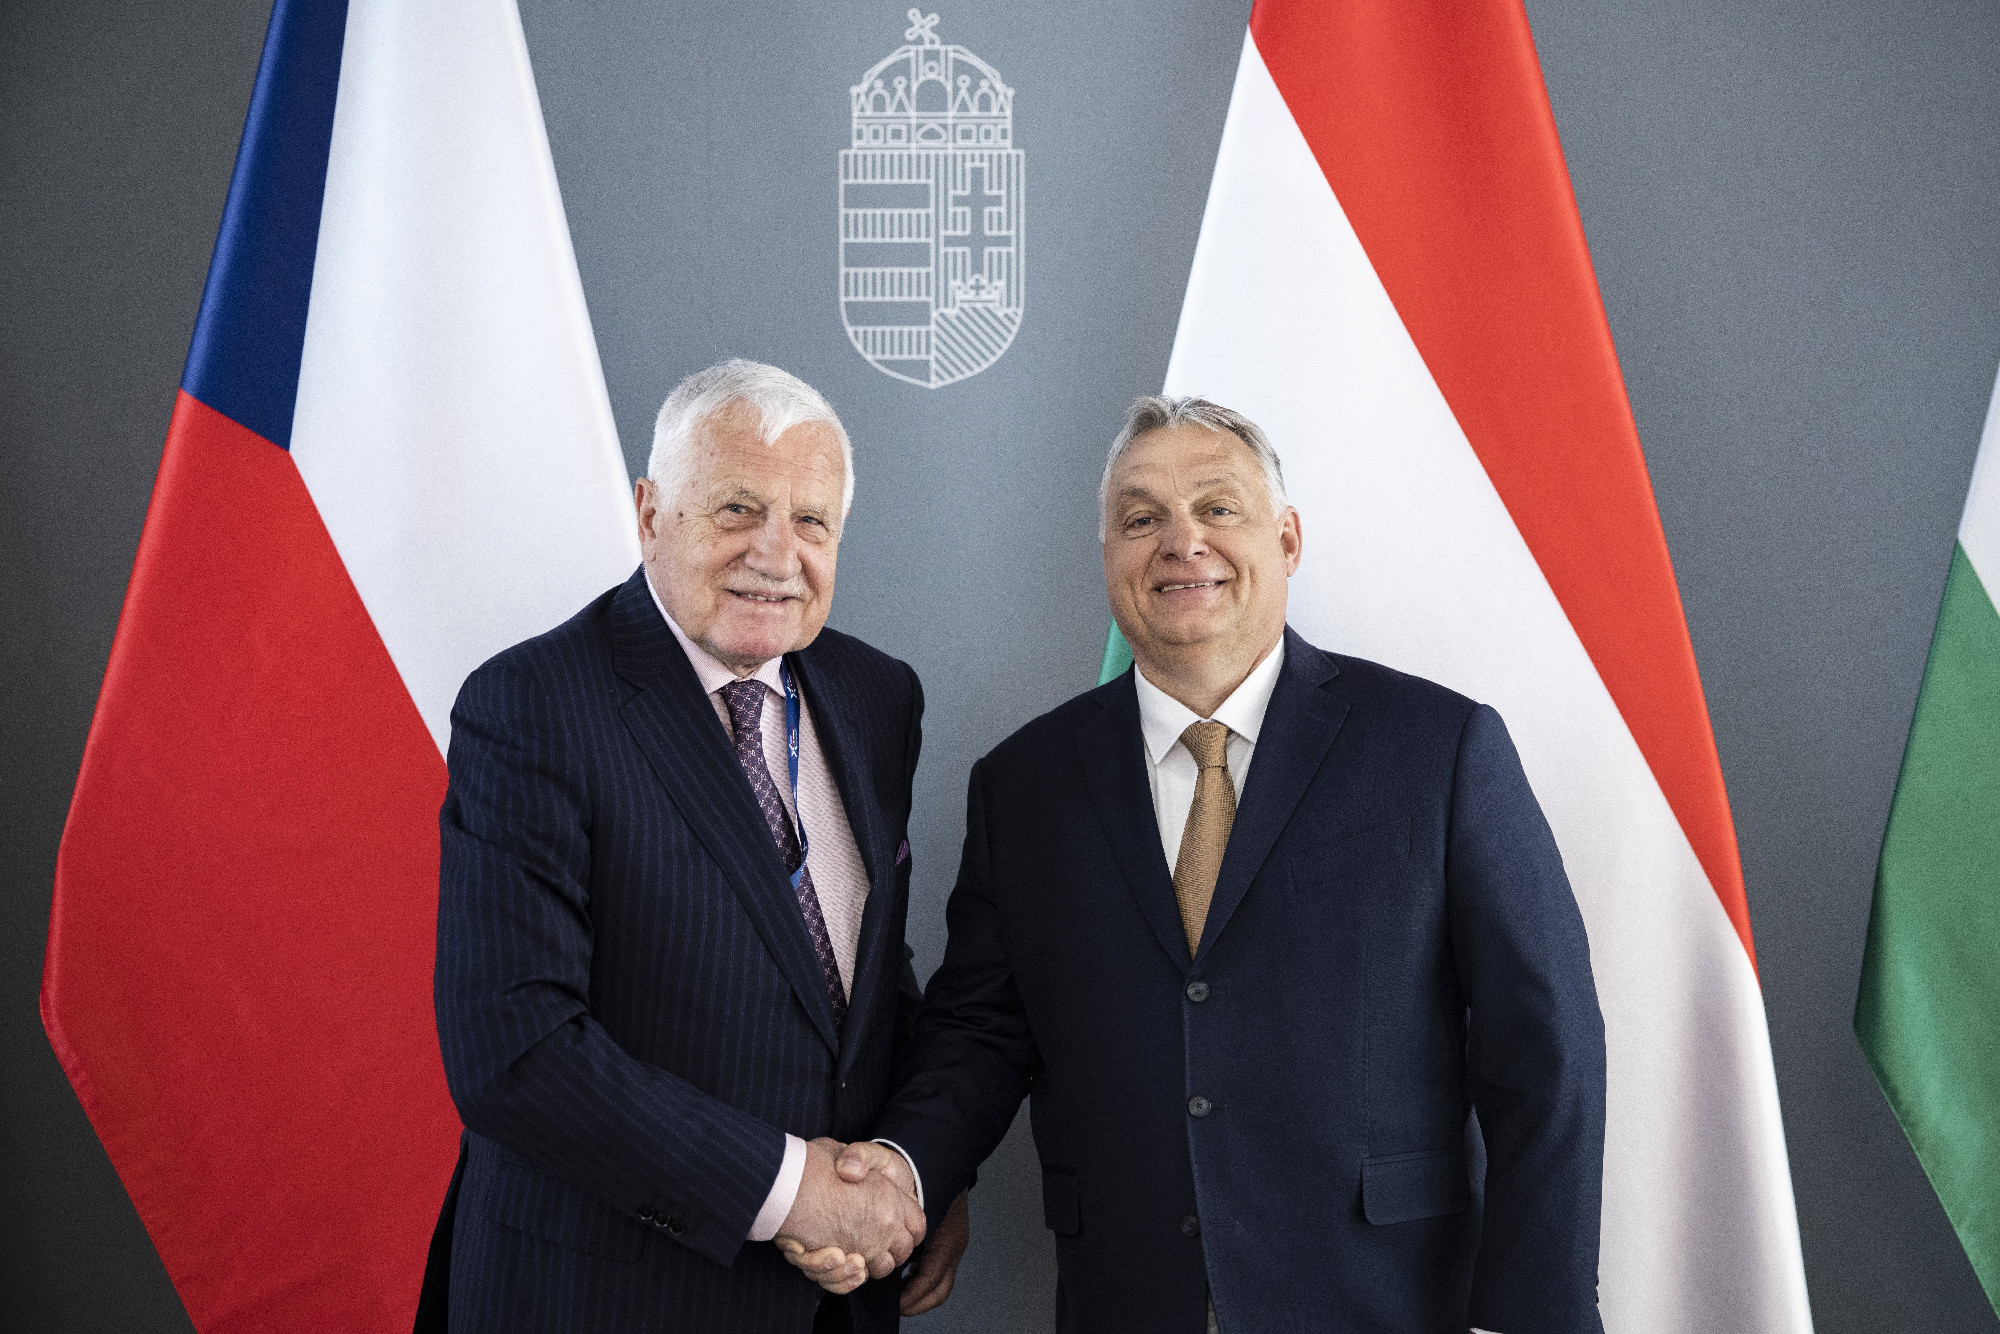 Václav Klaus korábbi cseh köztársasági elnökkel találkozott Orbán Viktor